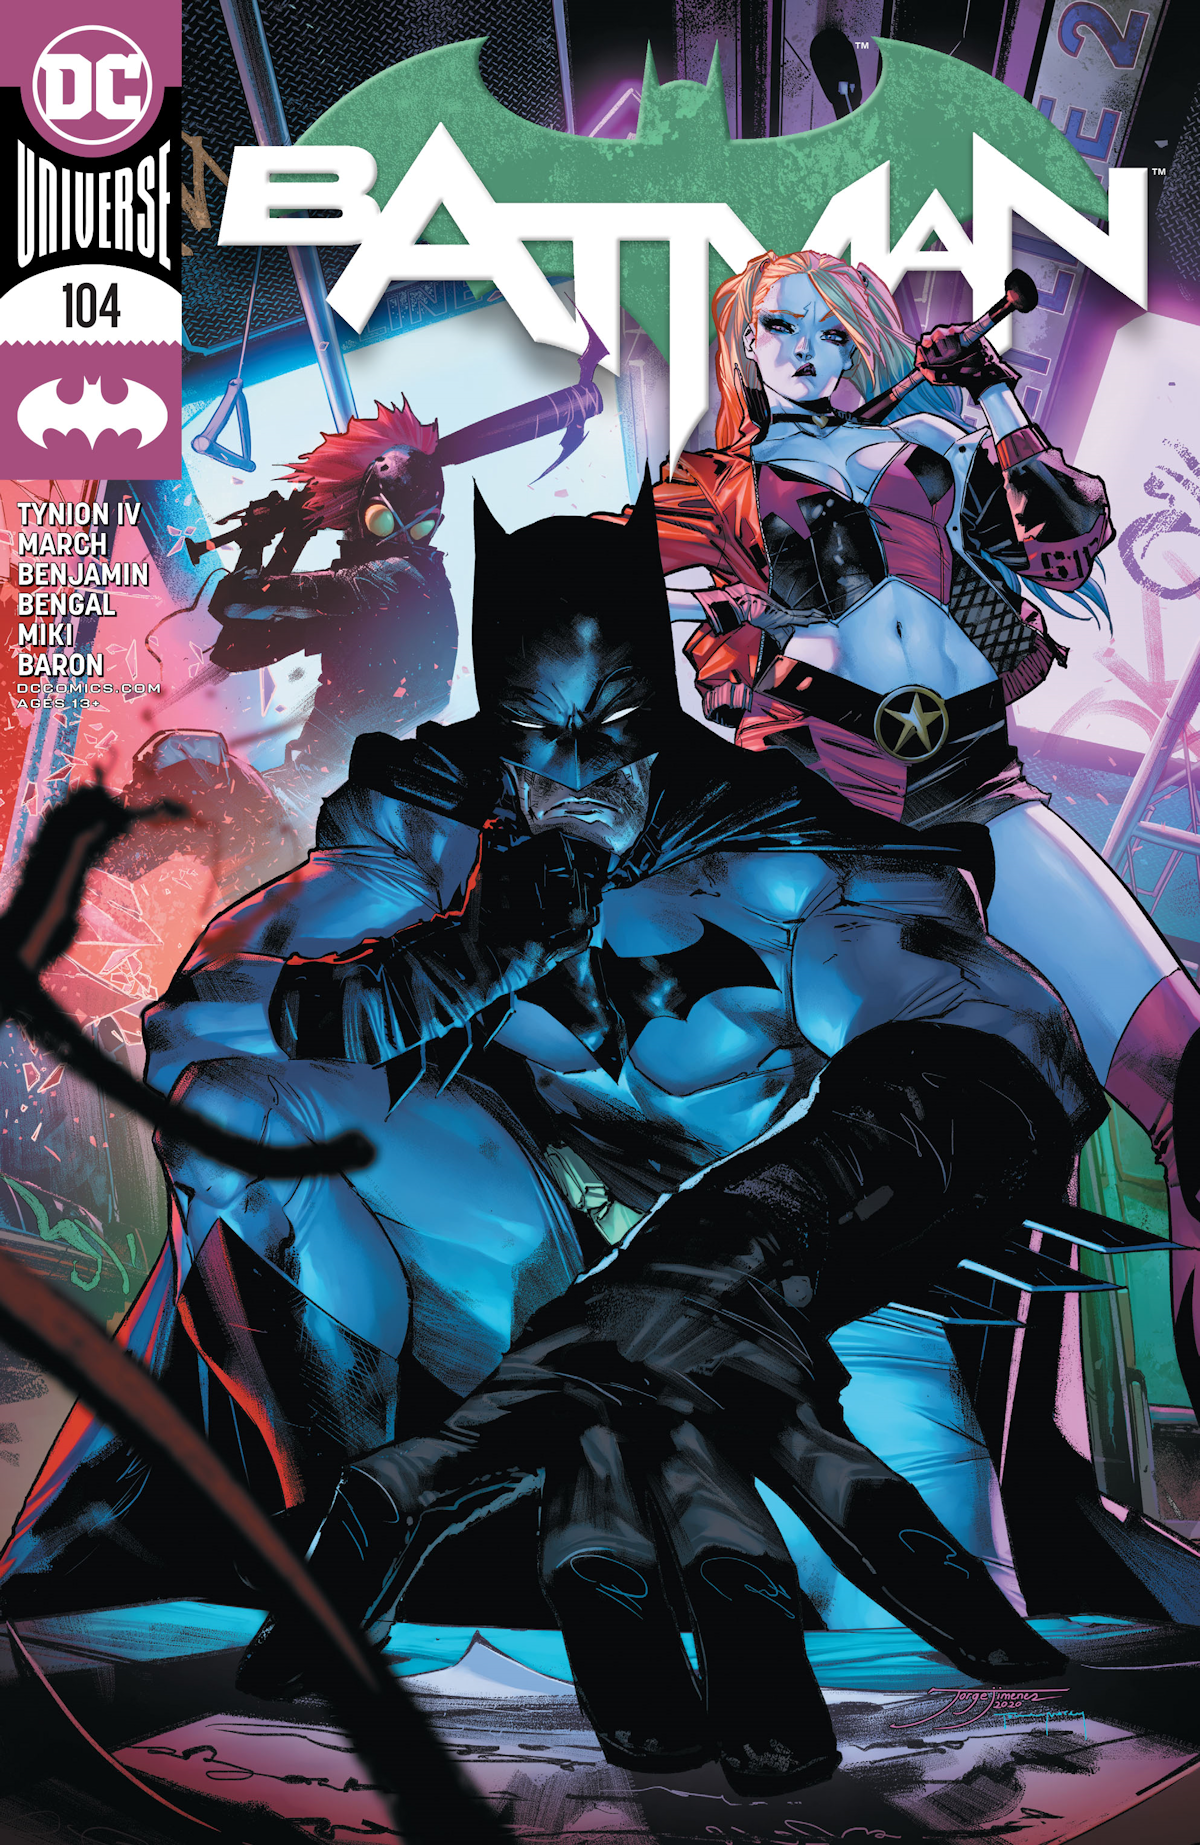 Batman Vol. 3 104 (Cover A)